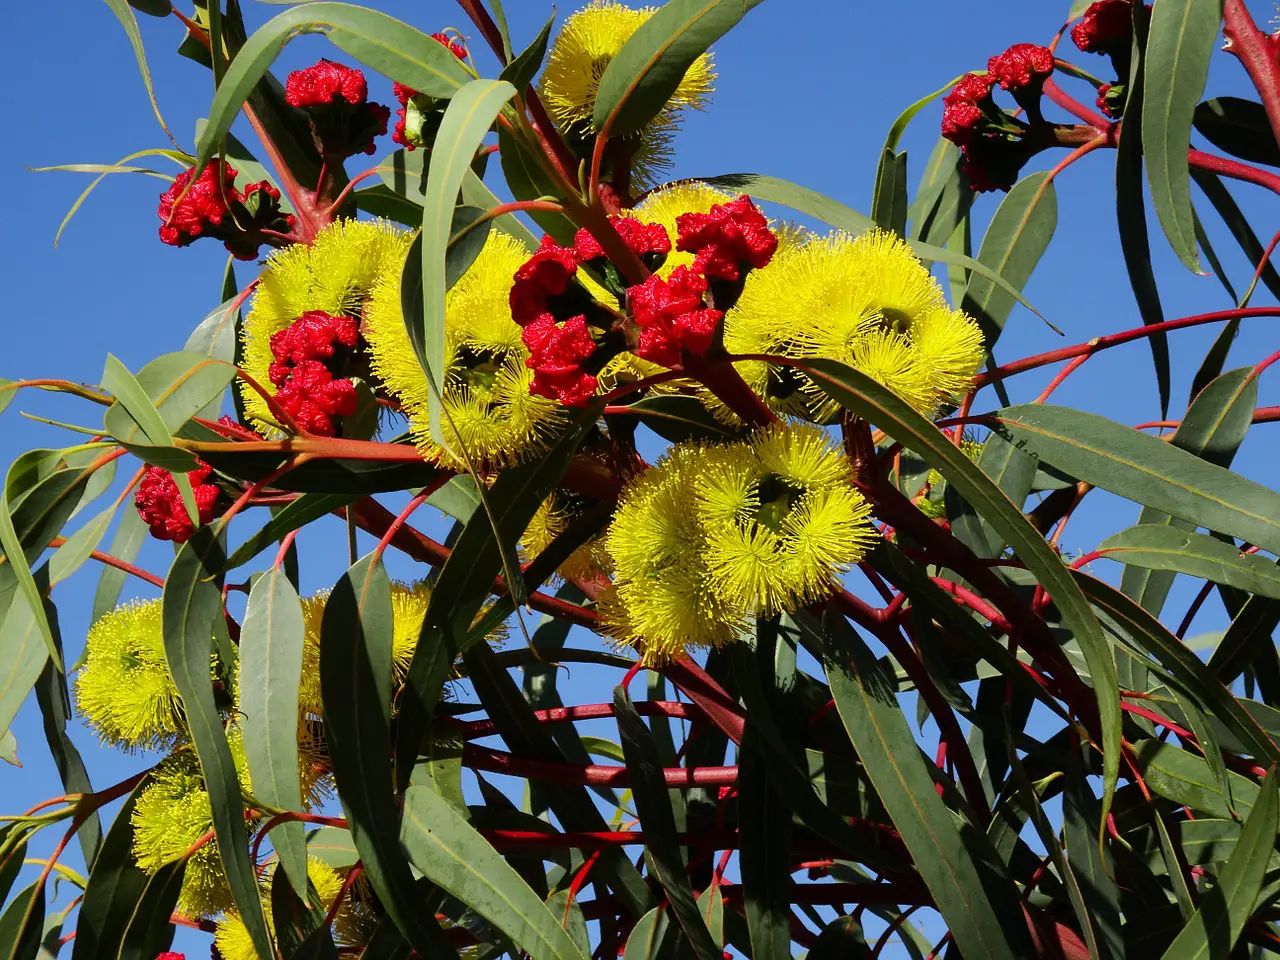 eucalyptus flower, australian tree blossom, colorful flowers-777900.jpg